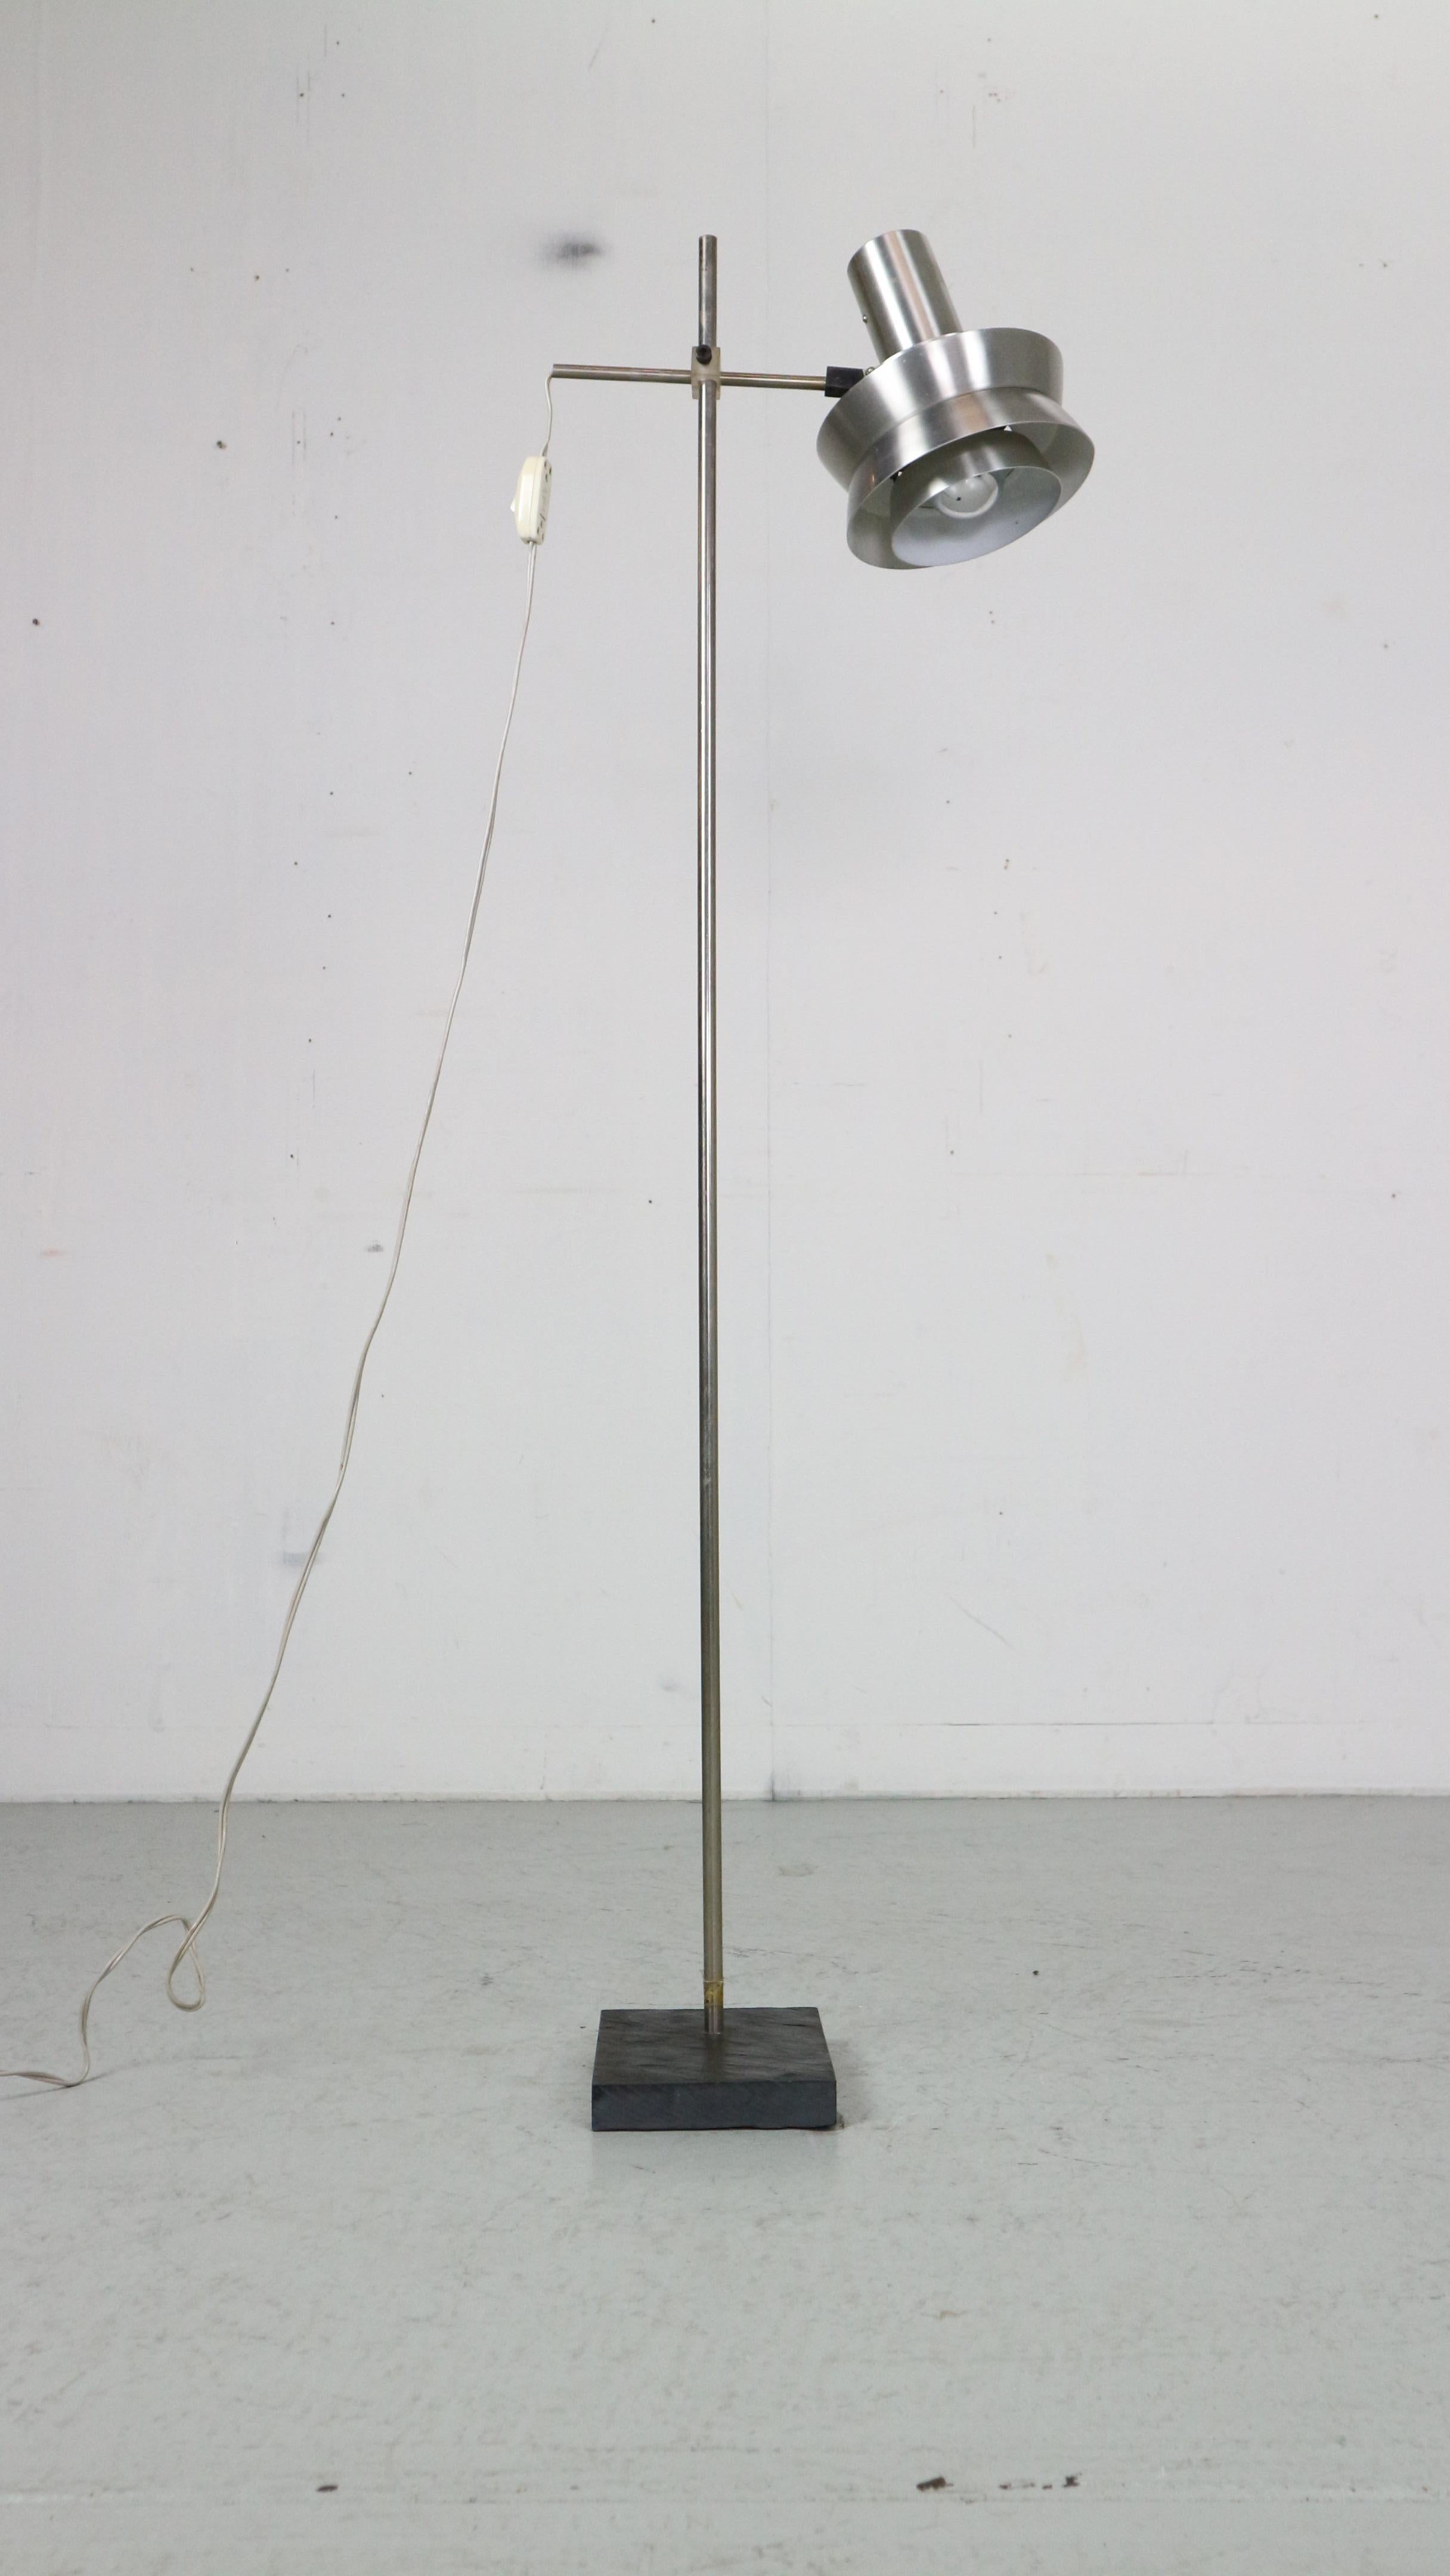 Lámpara de pie de época moderna escandinava diseñada en la década de 1970, Dinamarca.

La pantalla de metal cromado está disponible en dos colores: plateado y rojo, y tiene un botón de encendido/apagado.
Puedes ajustar la altura y la dirección de la